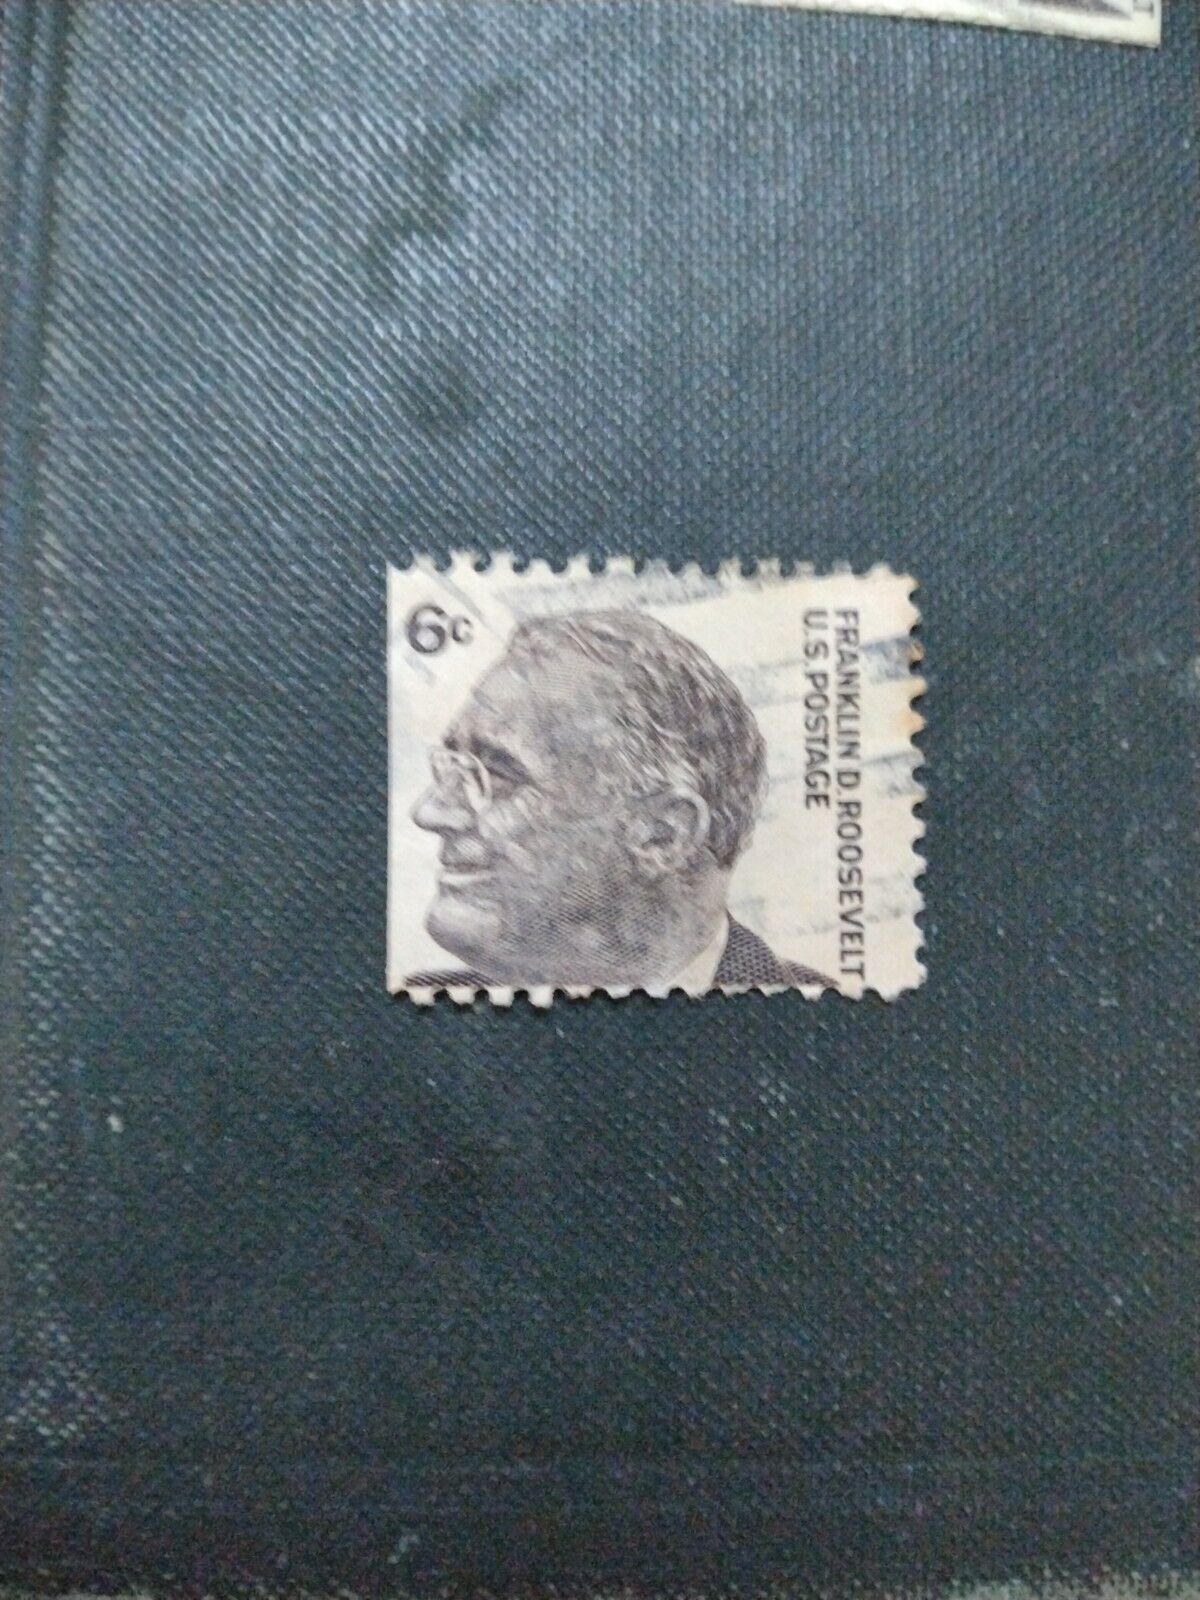 Vintage Rare Franklin D Roosevelt 6 cent used Stamp